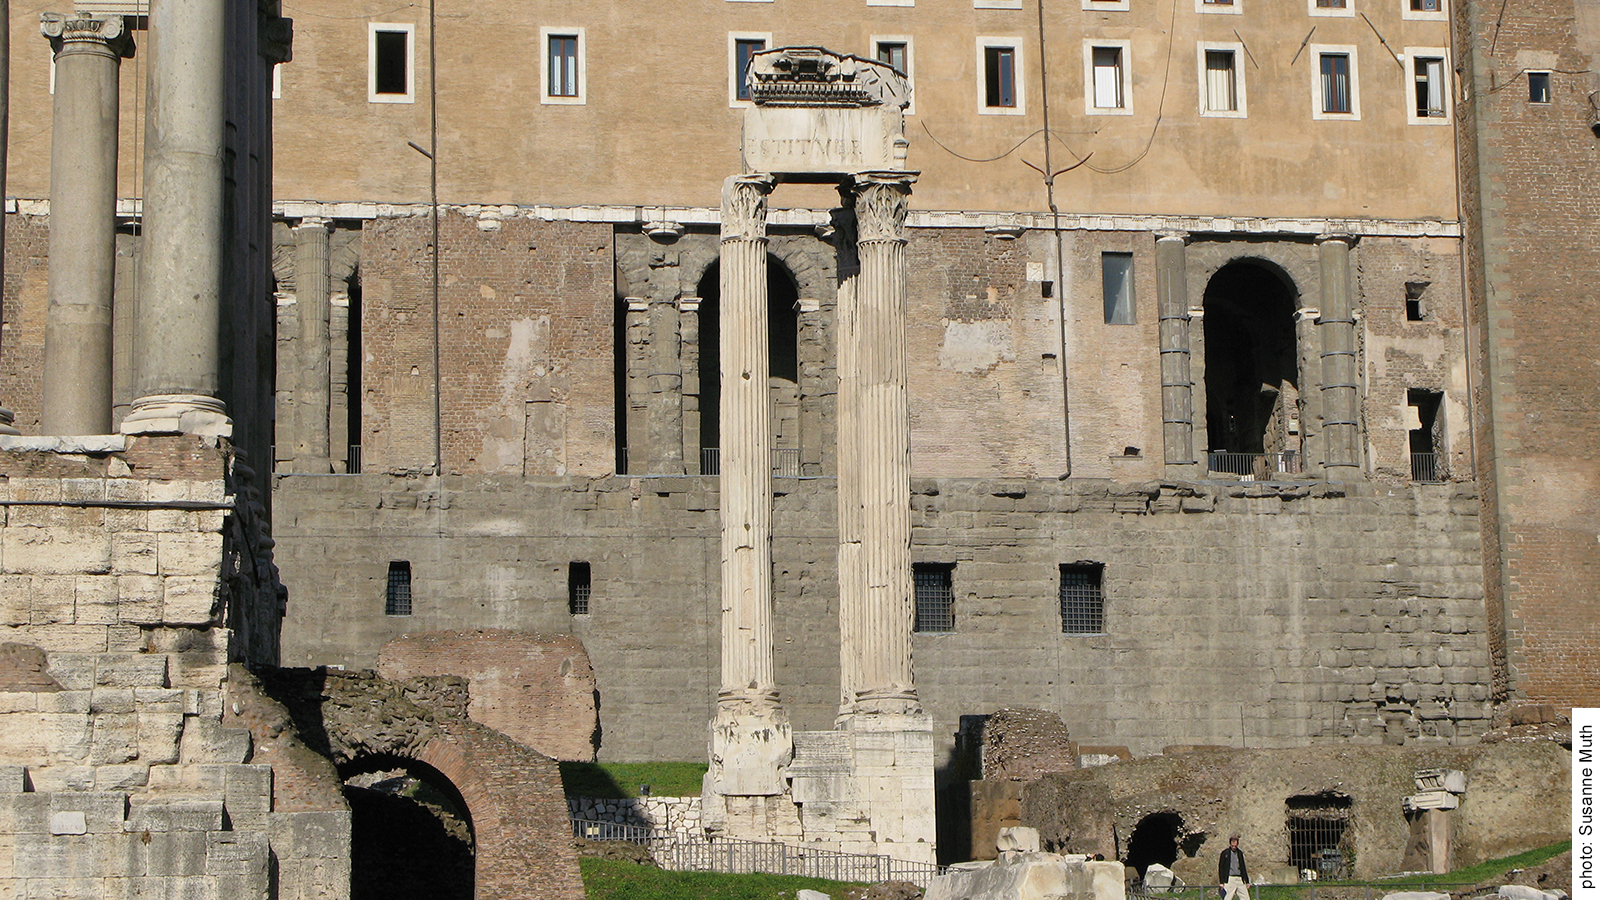 Vespasianstempel, heutiges Erscheinungsbild